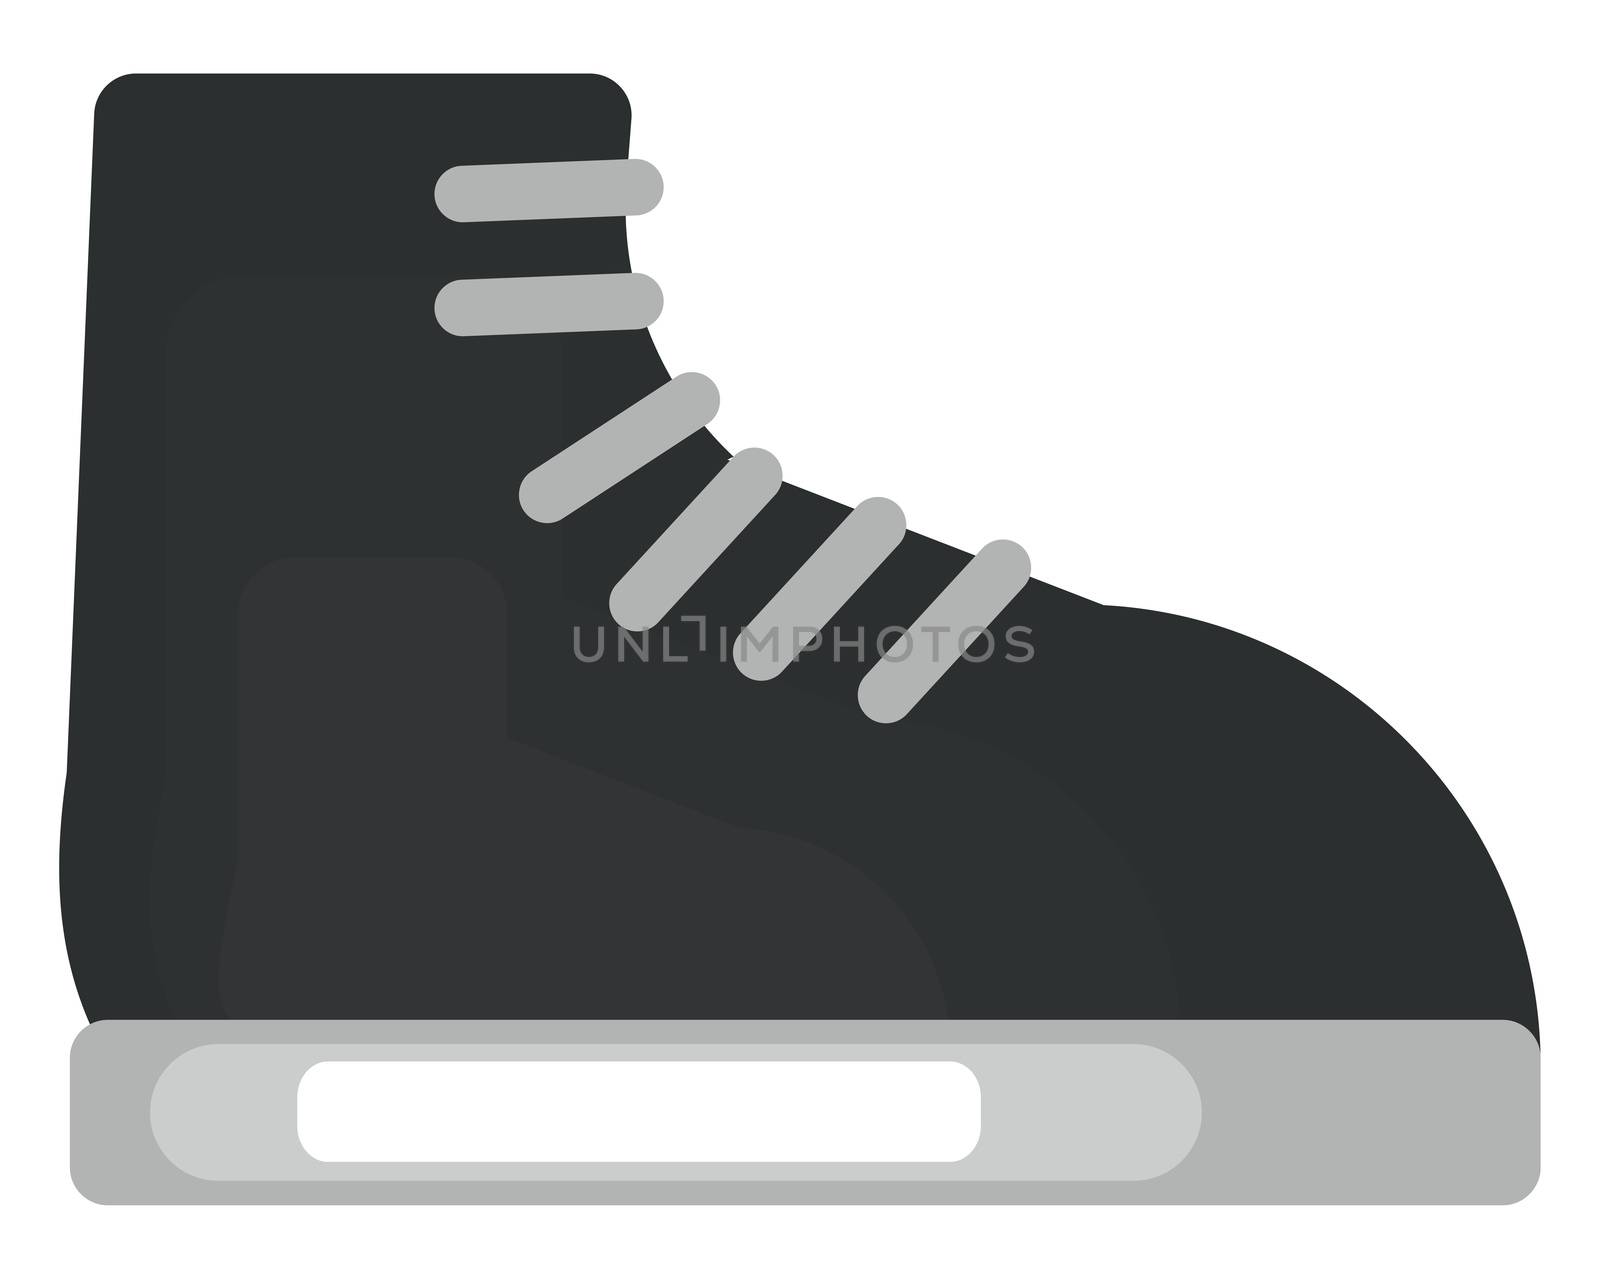 Black boot , illustration, vector on white background